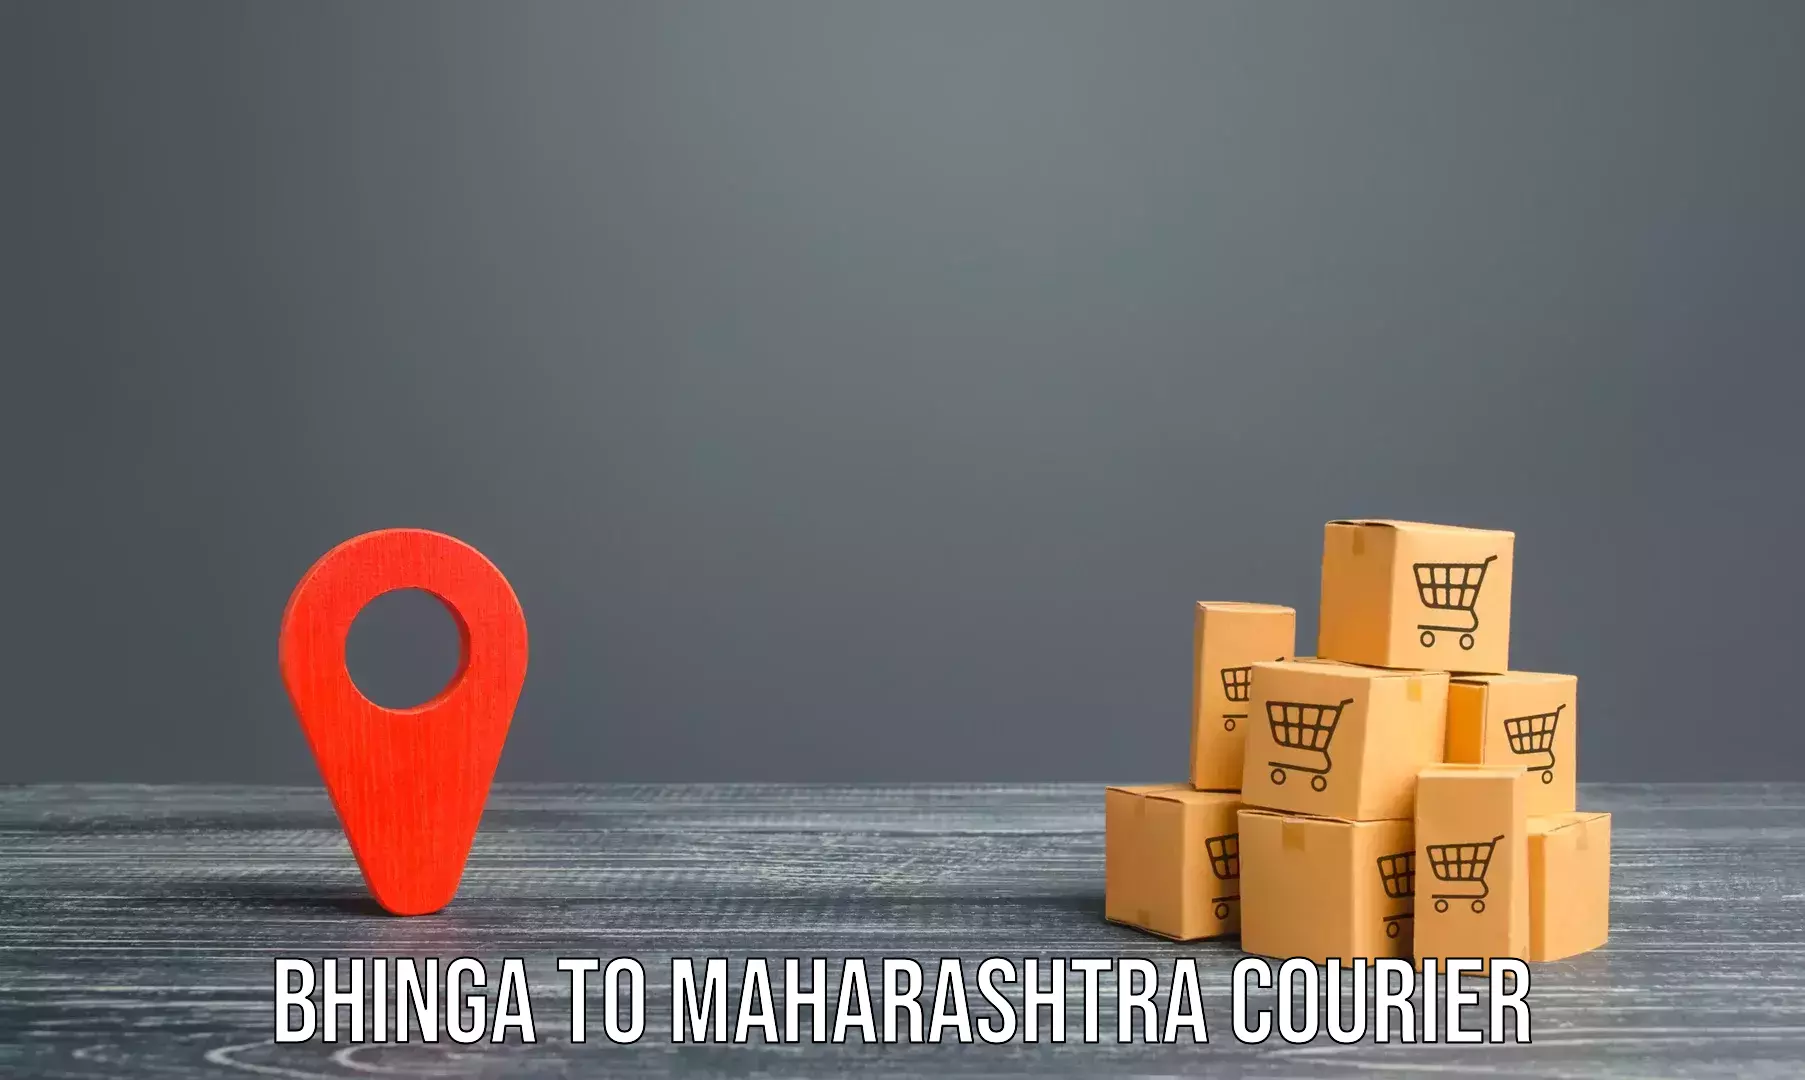 Home shifting experts Bhinga to Maharashtra